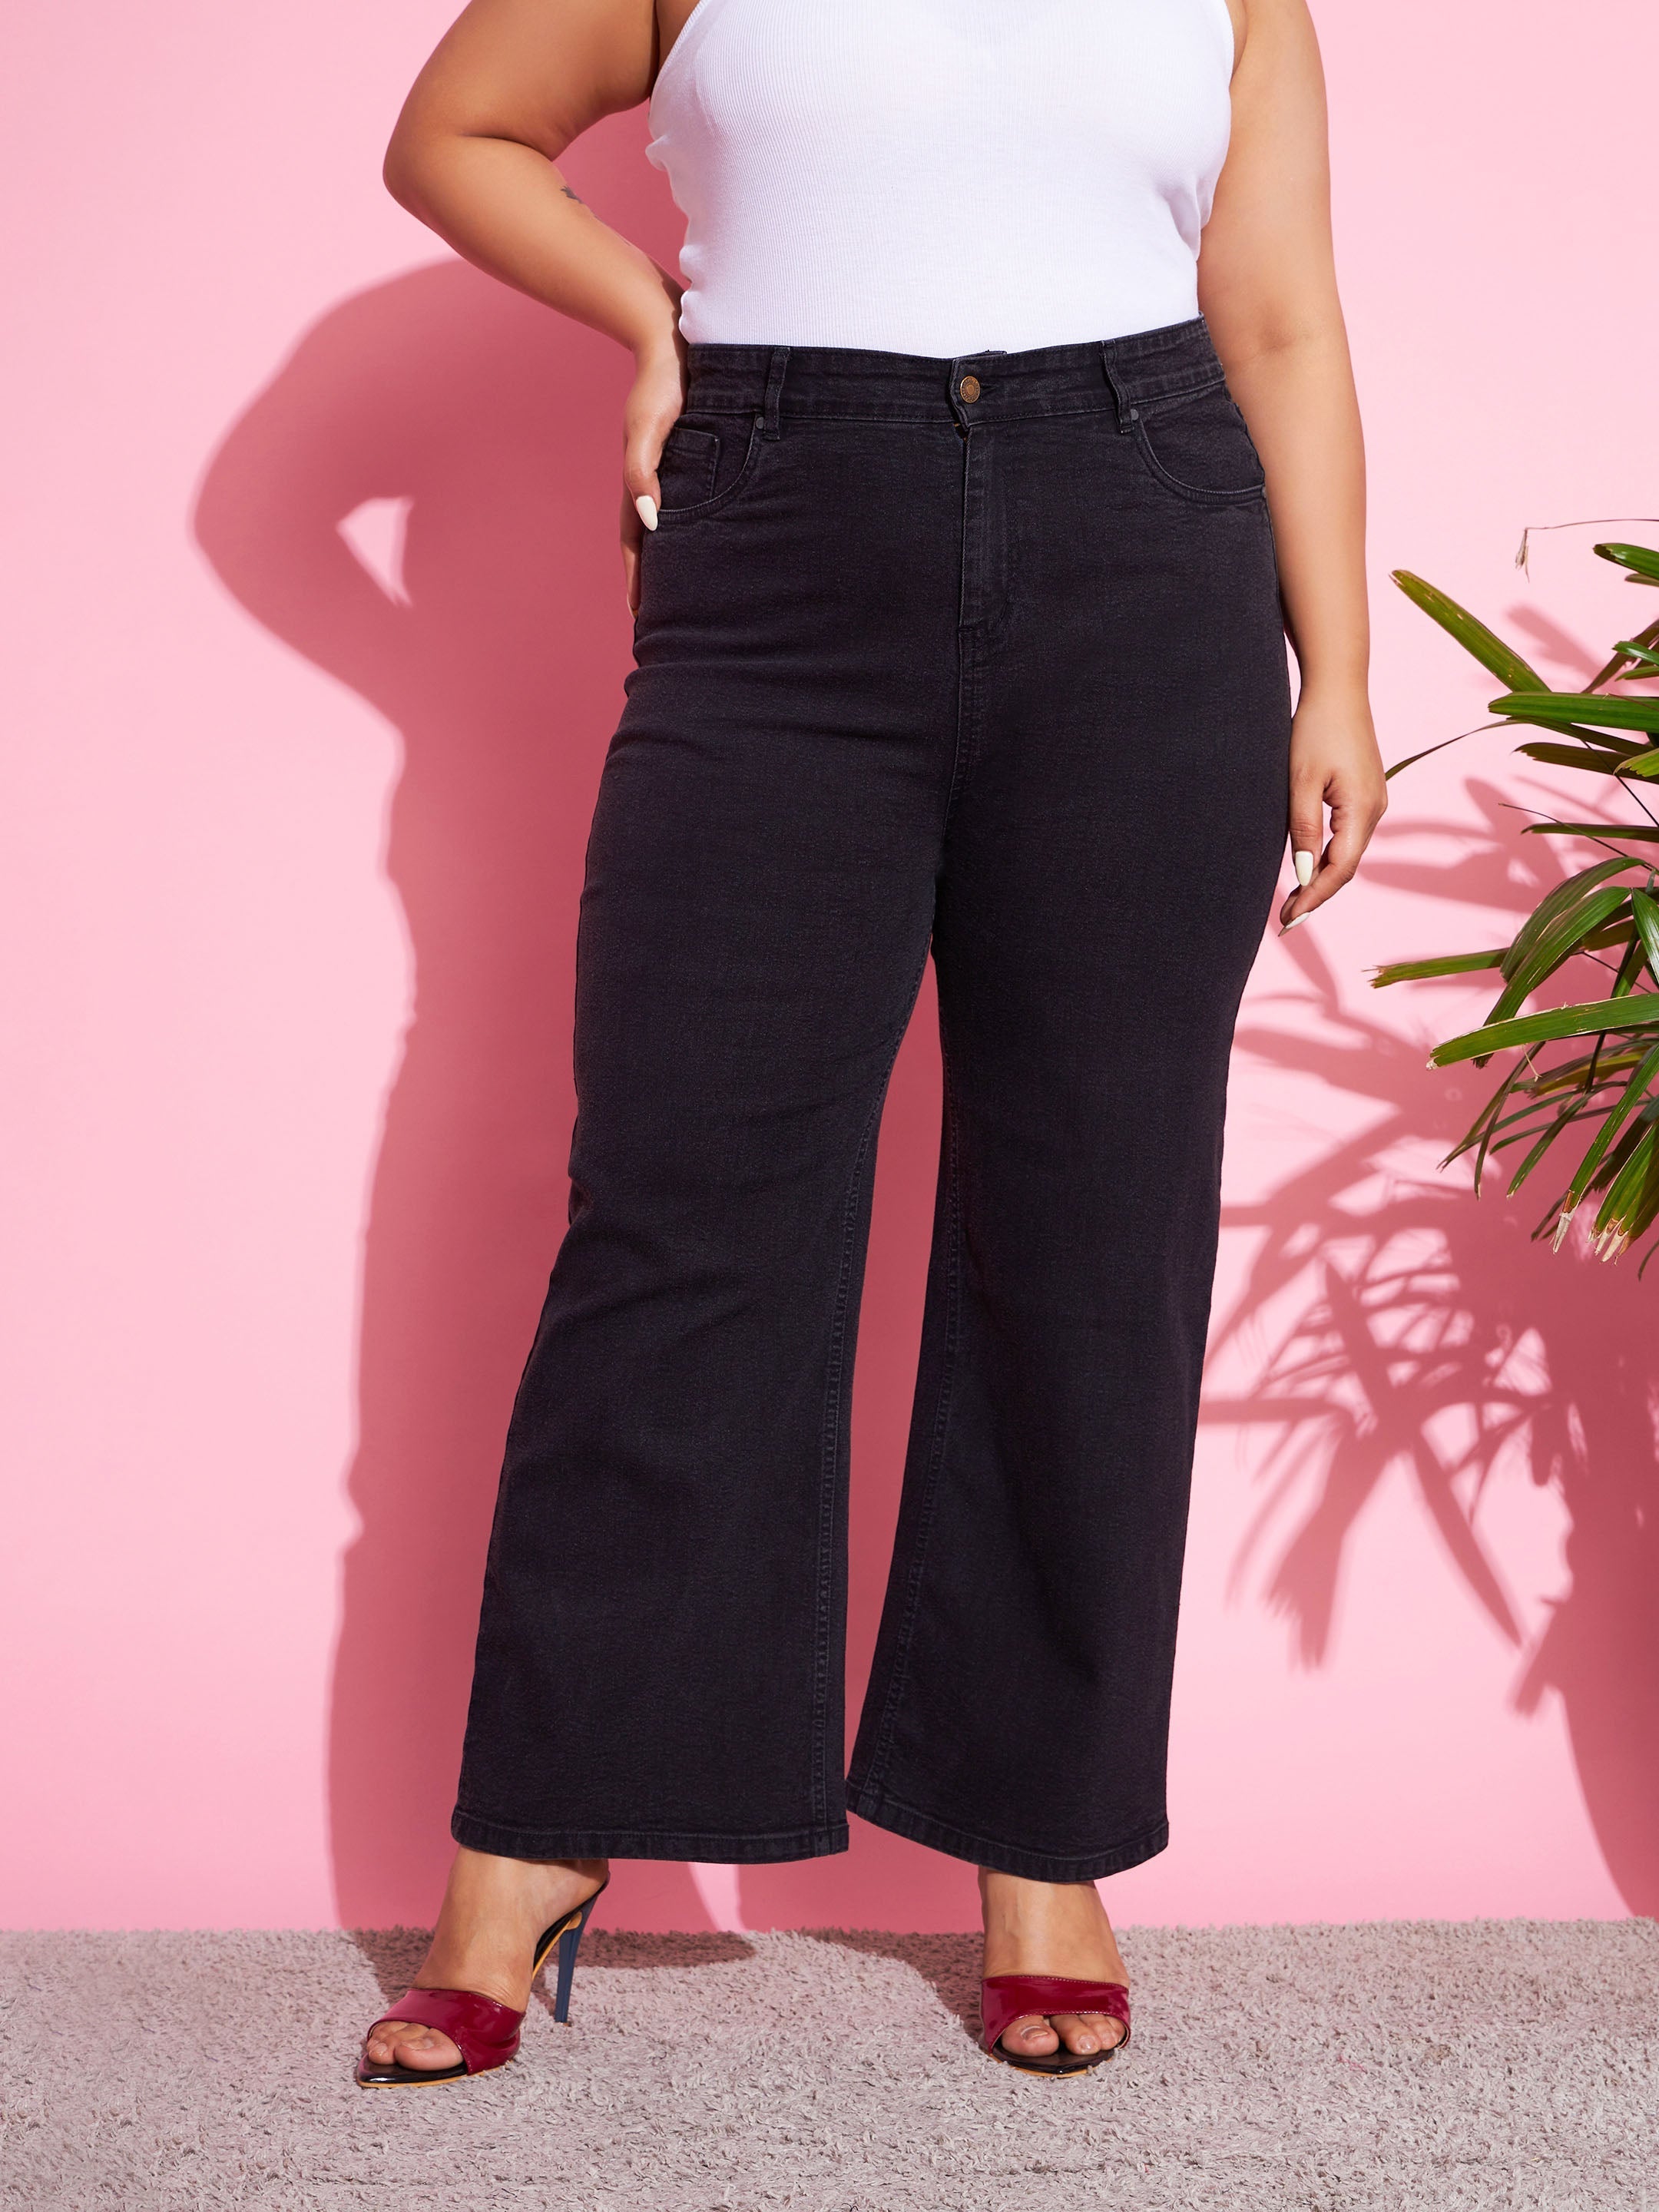 Women's Black Acid Wash Denim Bell Bottom Jeans - SASSAFRAS